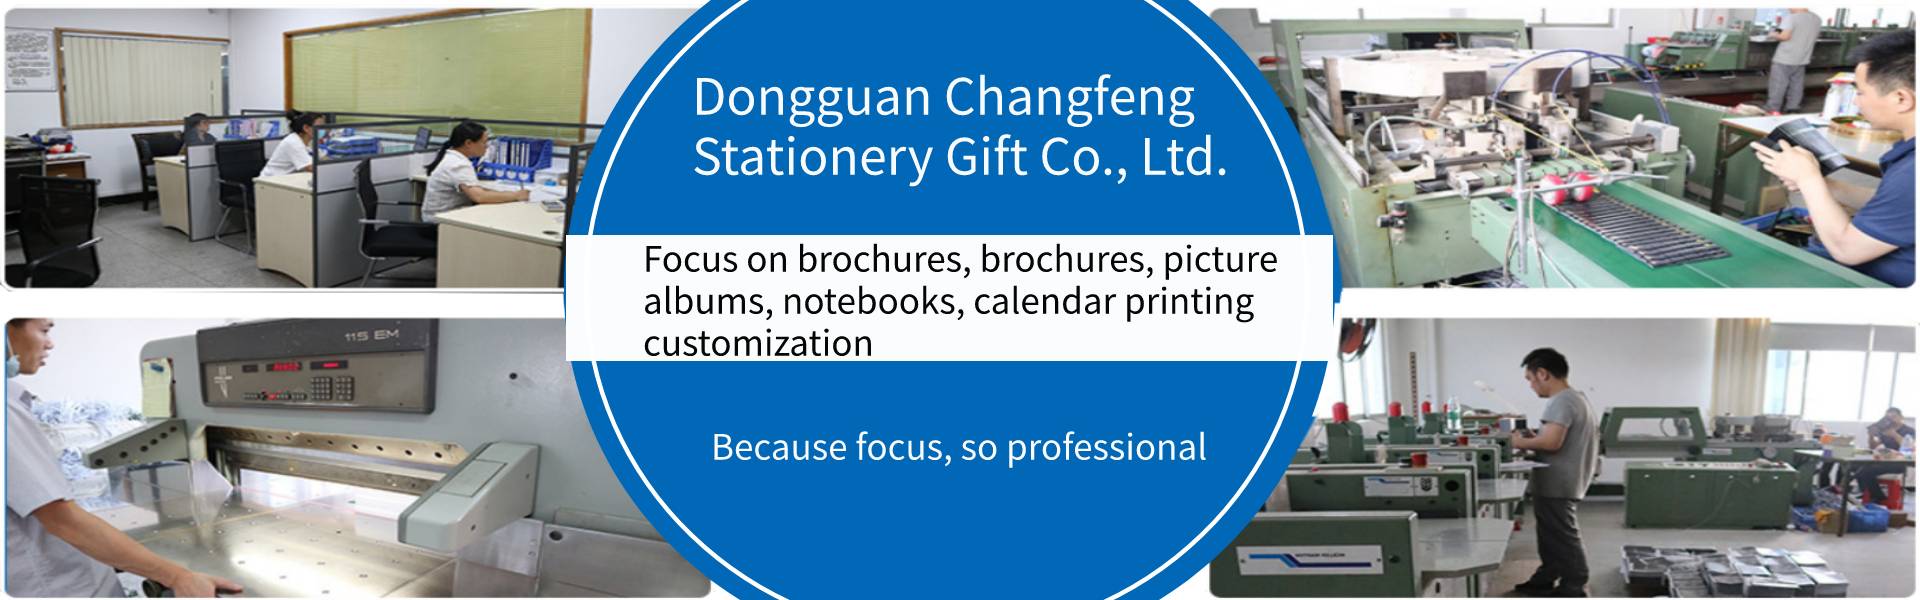 취급 설명서, 사진첩, 노트북,Dongguan Changfeng Stationery Gift Co., Ltd.